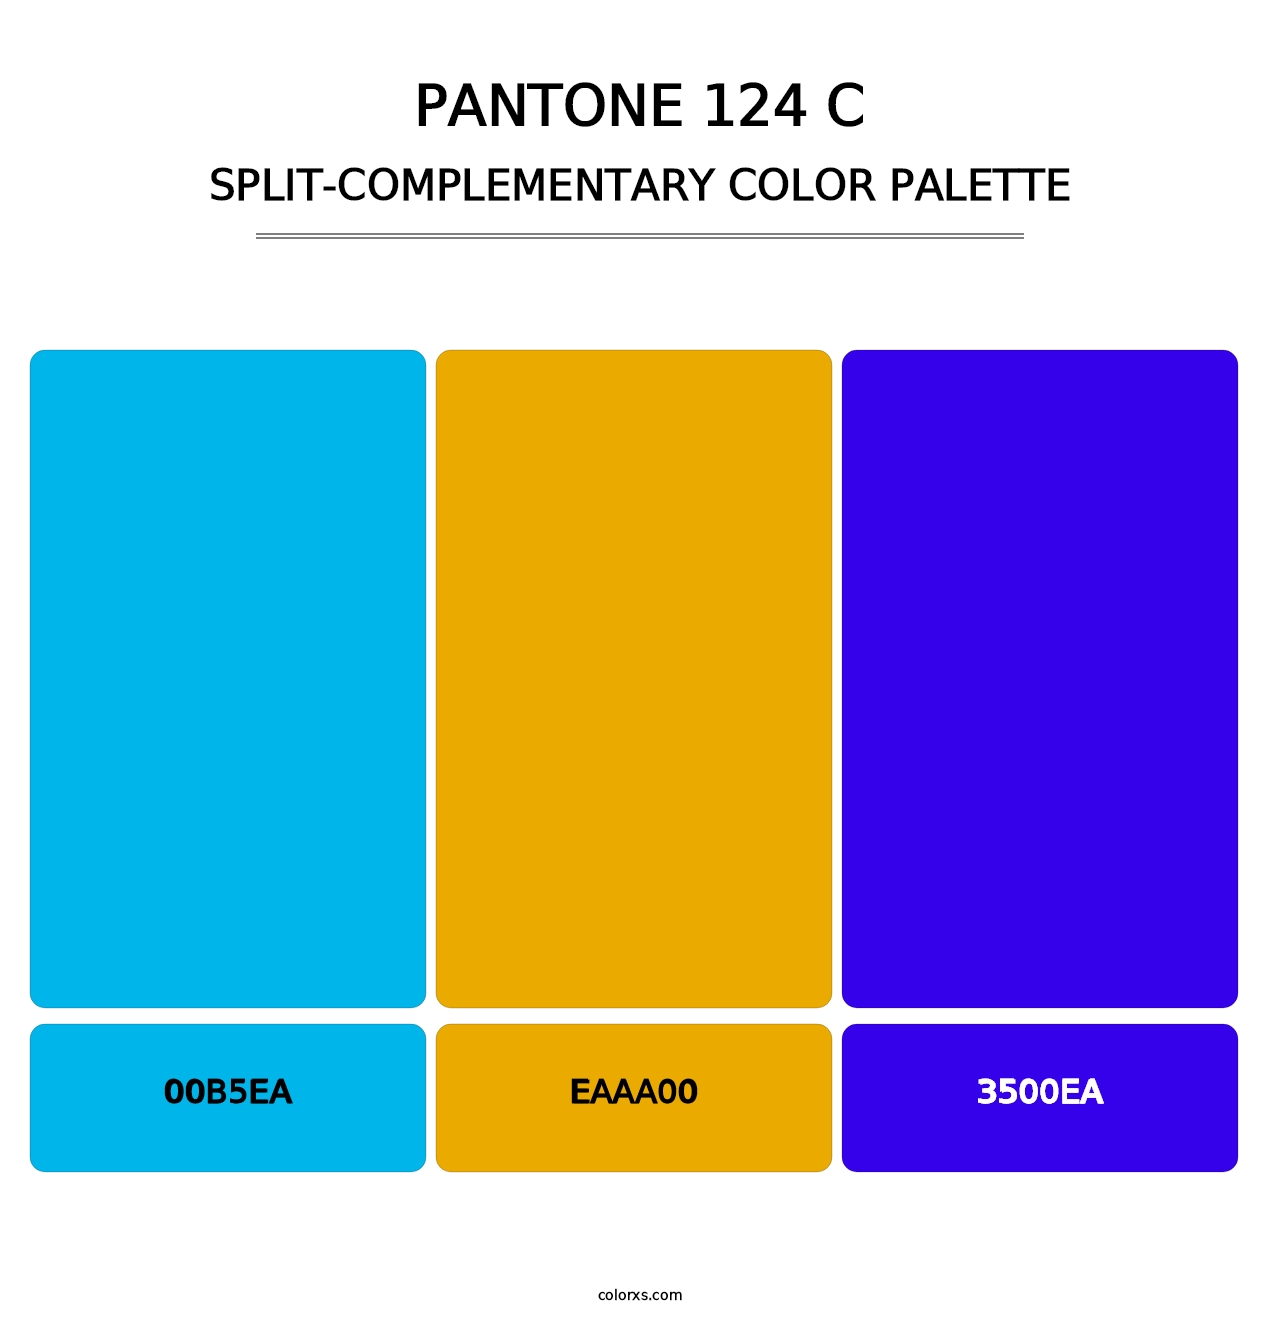 PANTONE 124 C - Split-Complementary Color Palette